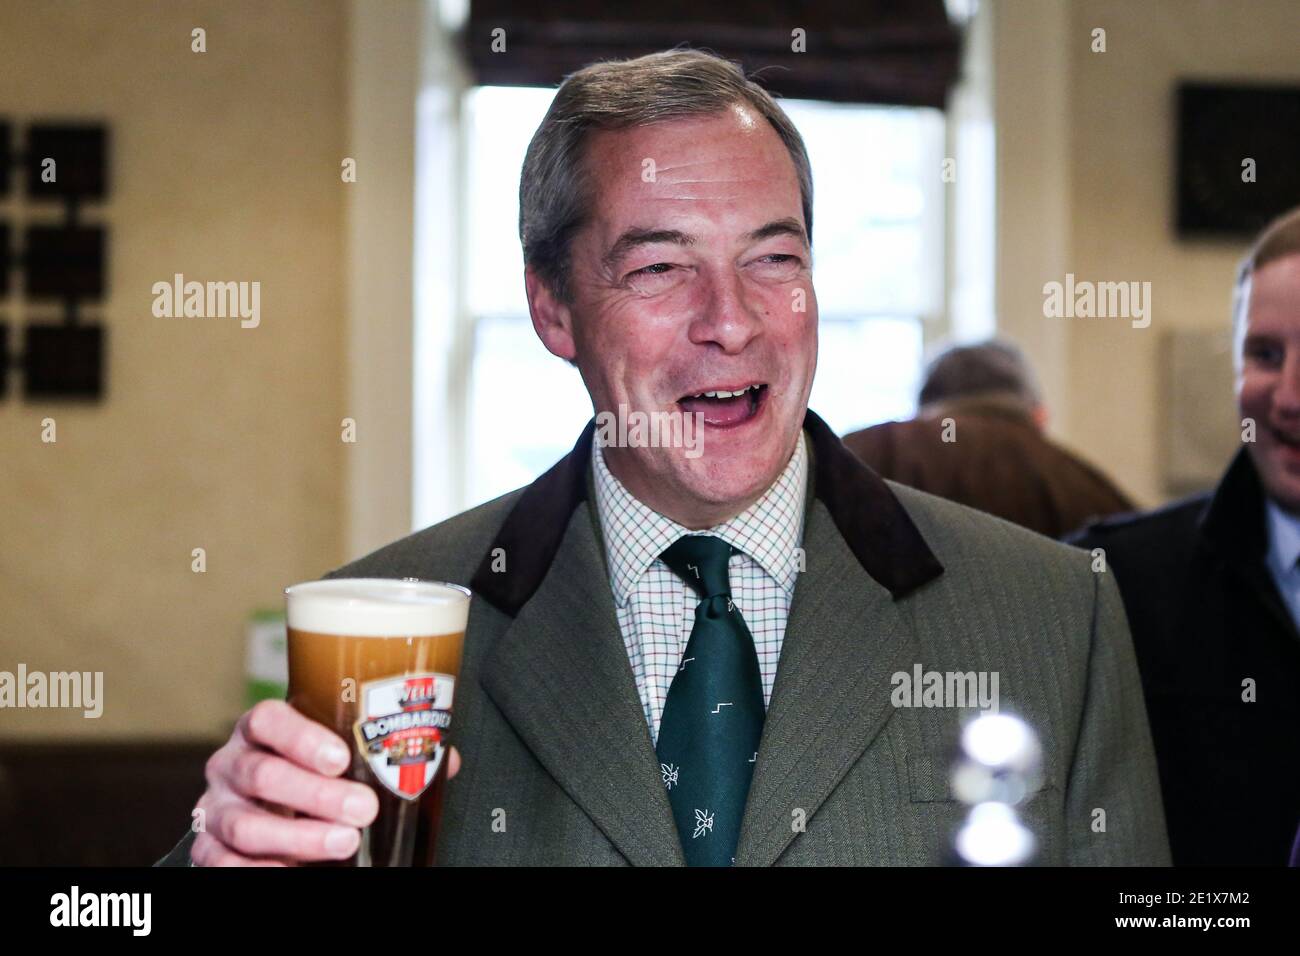 05/12/16. Sleaford, Reino Unido. Nigel Farage, ex líder del UKIP, bebe una pinta de cerveza en un pub en Sleaford, Lincolnshire, con Victoria Ayling, candida del UKIP Foto de stock